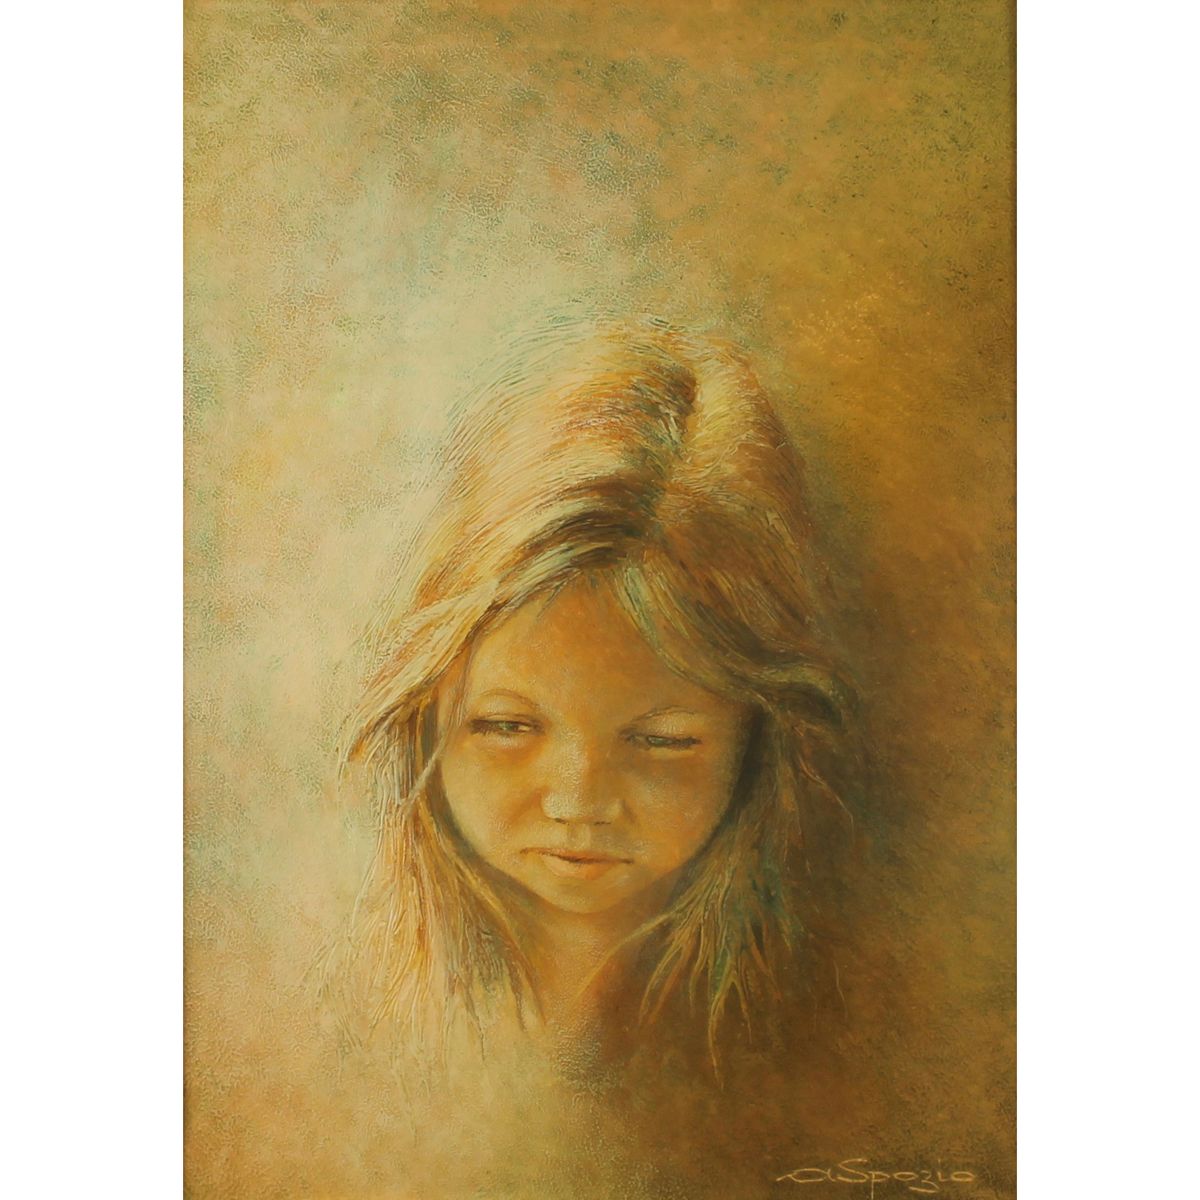 ARTURO SPOZIO (1921) "Volto di ragazza" - "Girl's face" Pintura al óleo sobre li&hellip;